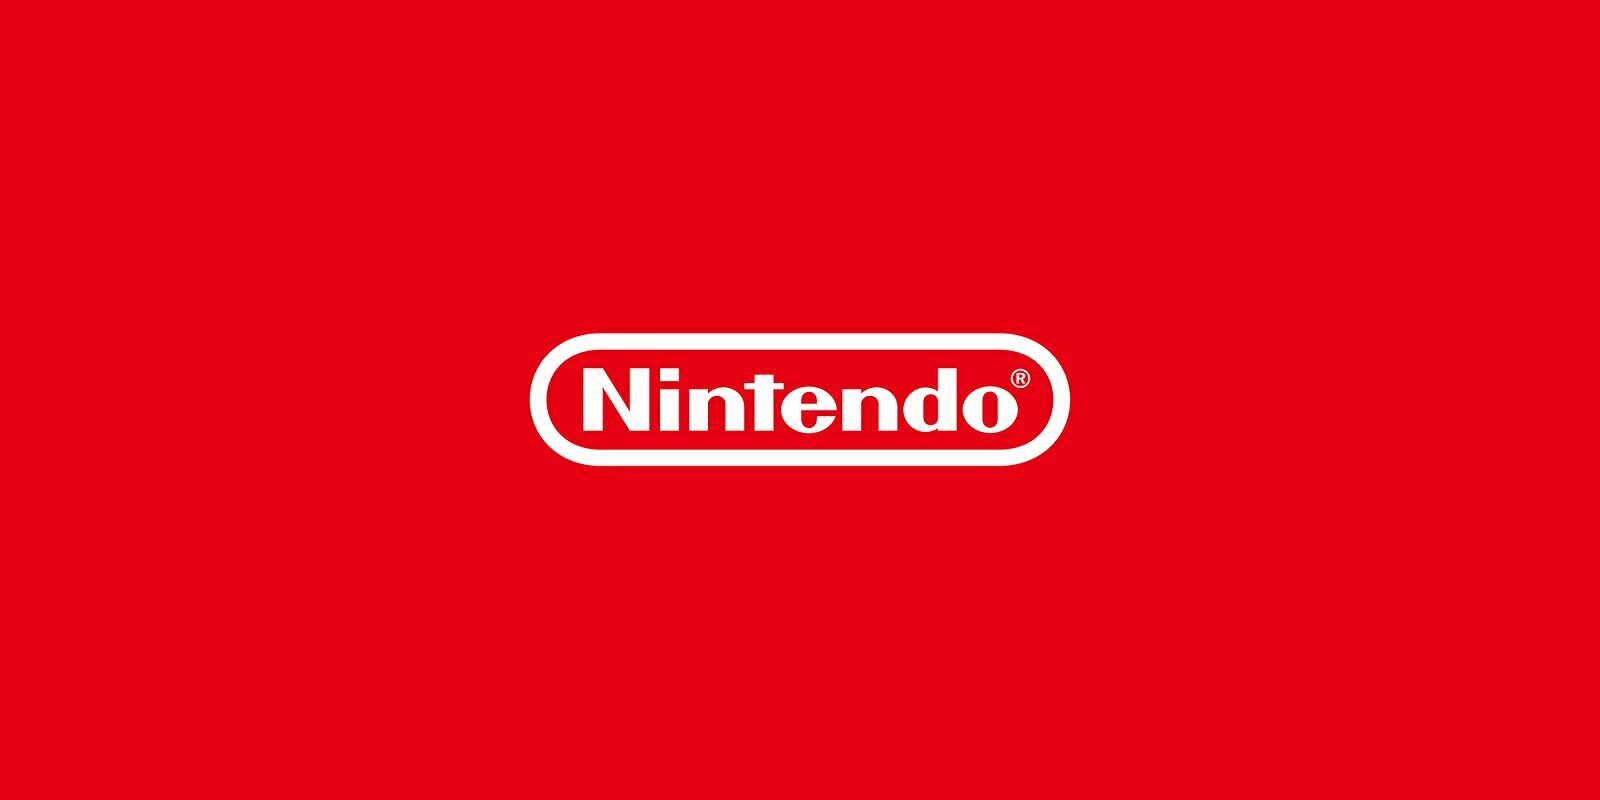 Arabia Saudita ya es el quinto mayor accionista de Nintendo al comprar una participación del 5%